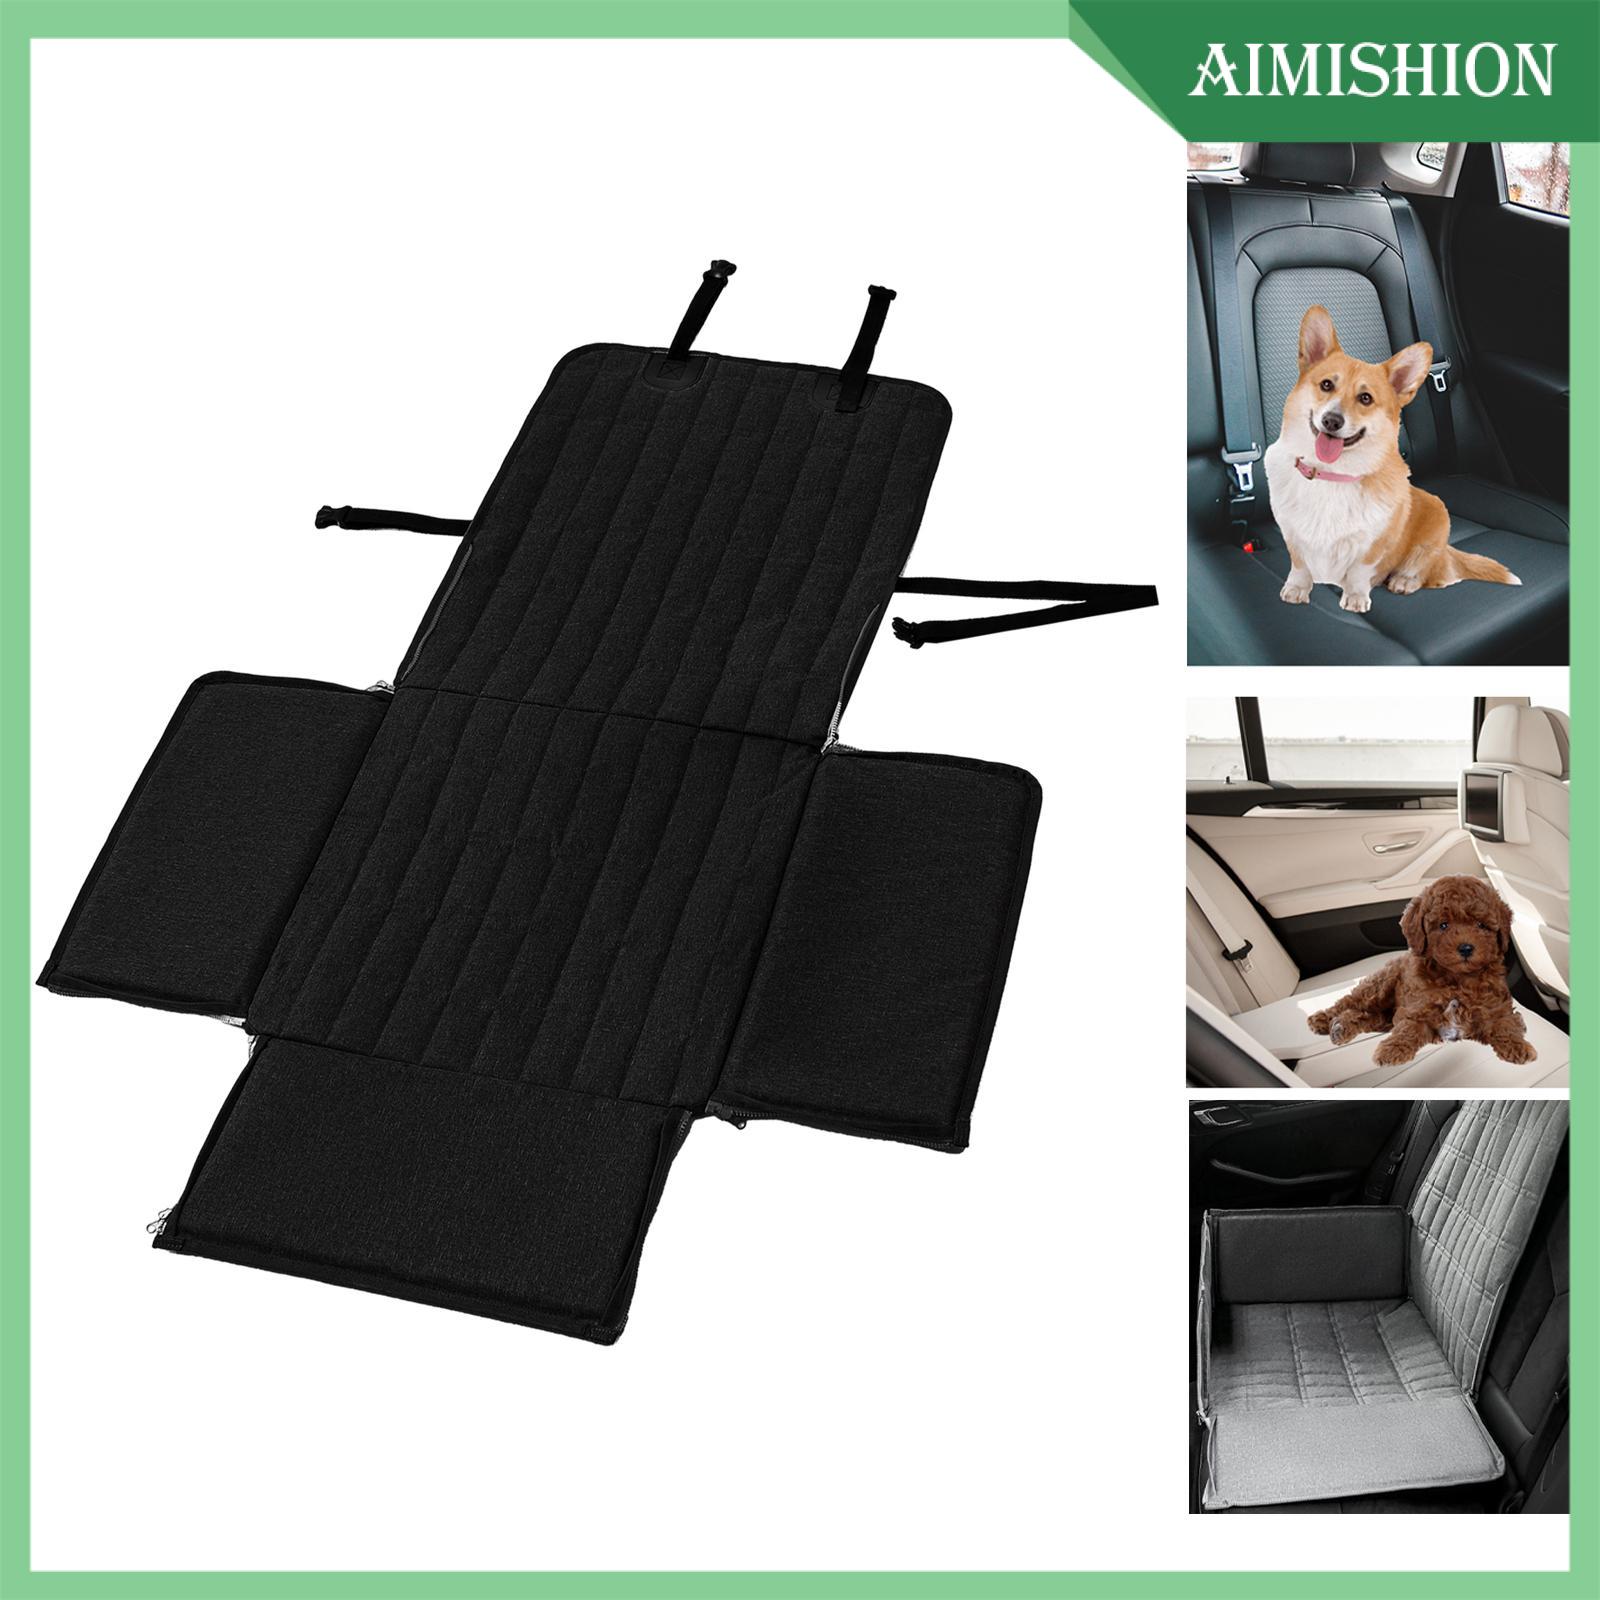 Aimishion Dog Car Seat Cover, Dog Car Hammock